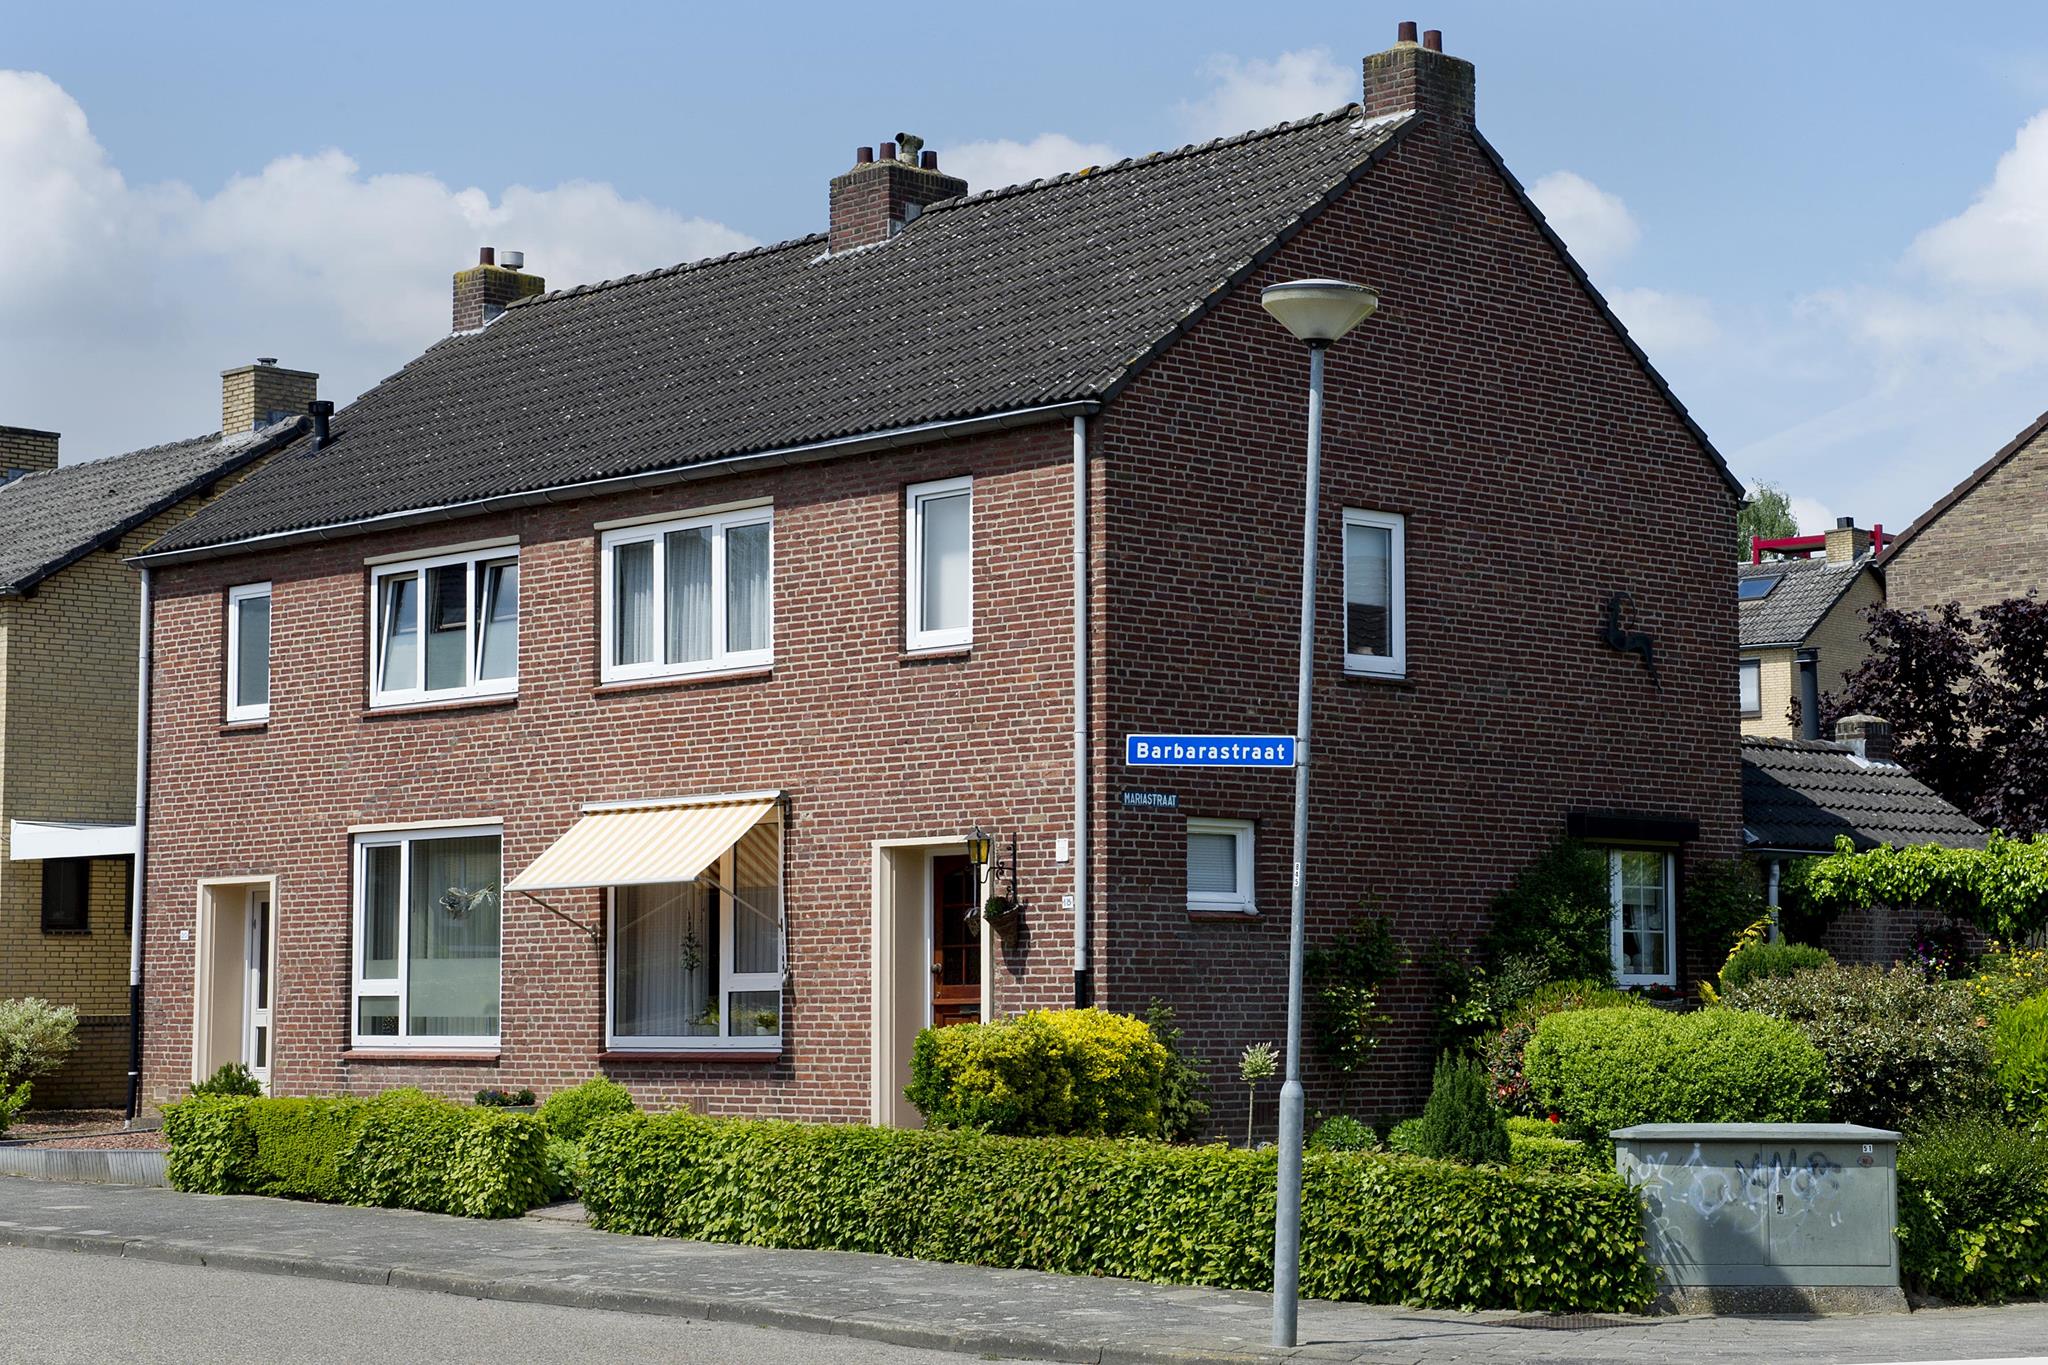 Barbarastraat 18, 6361 VL Nuth, Nederland